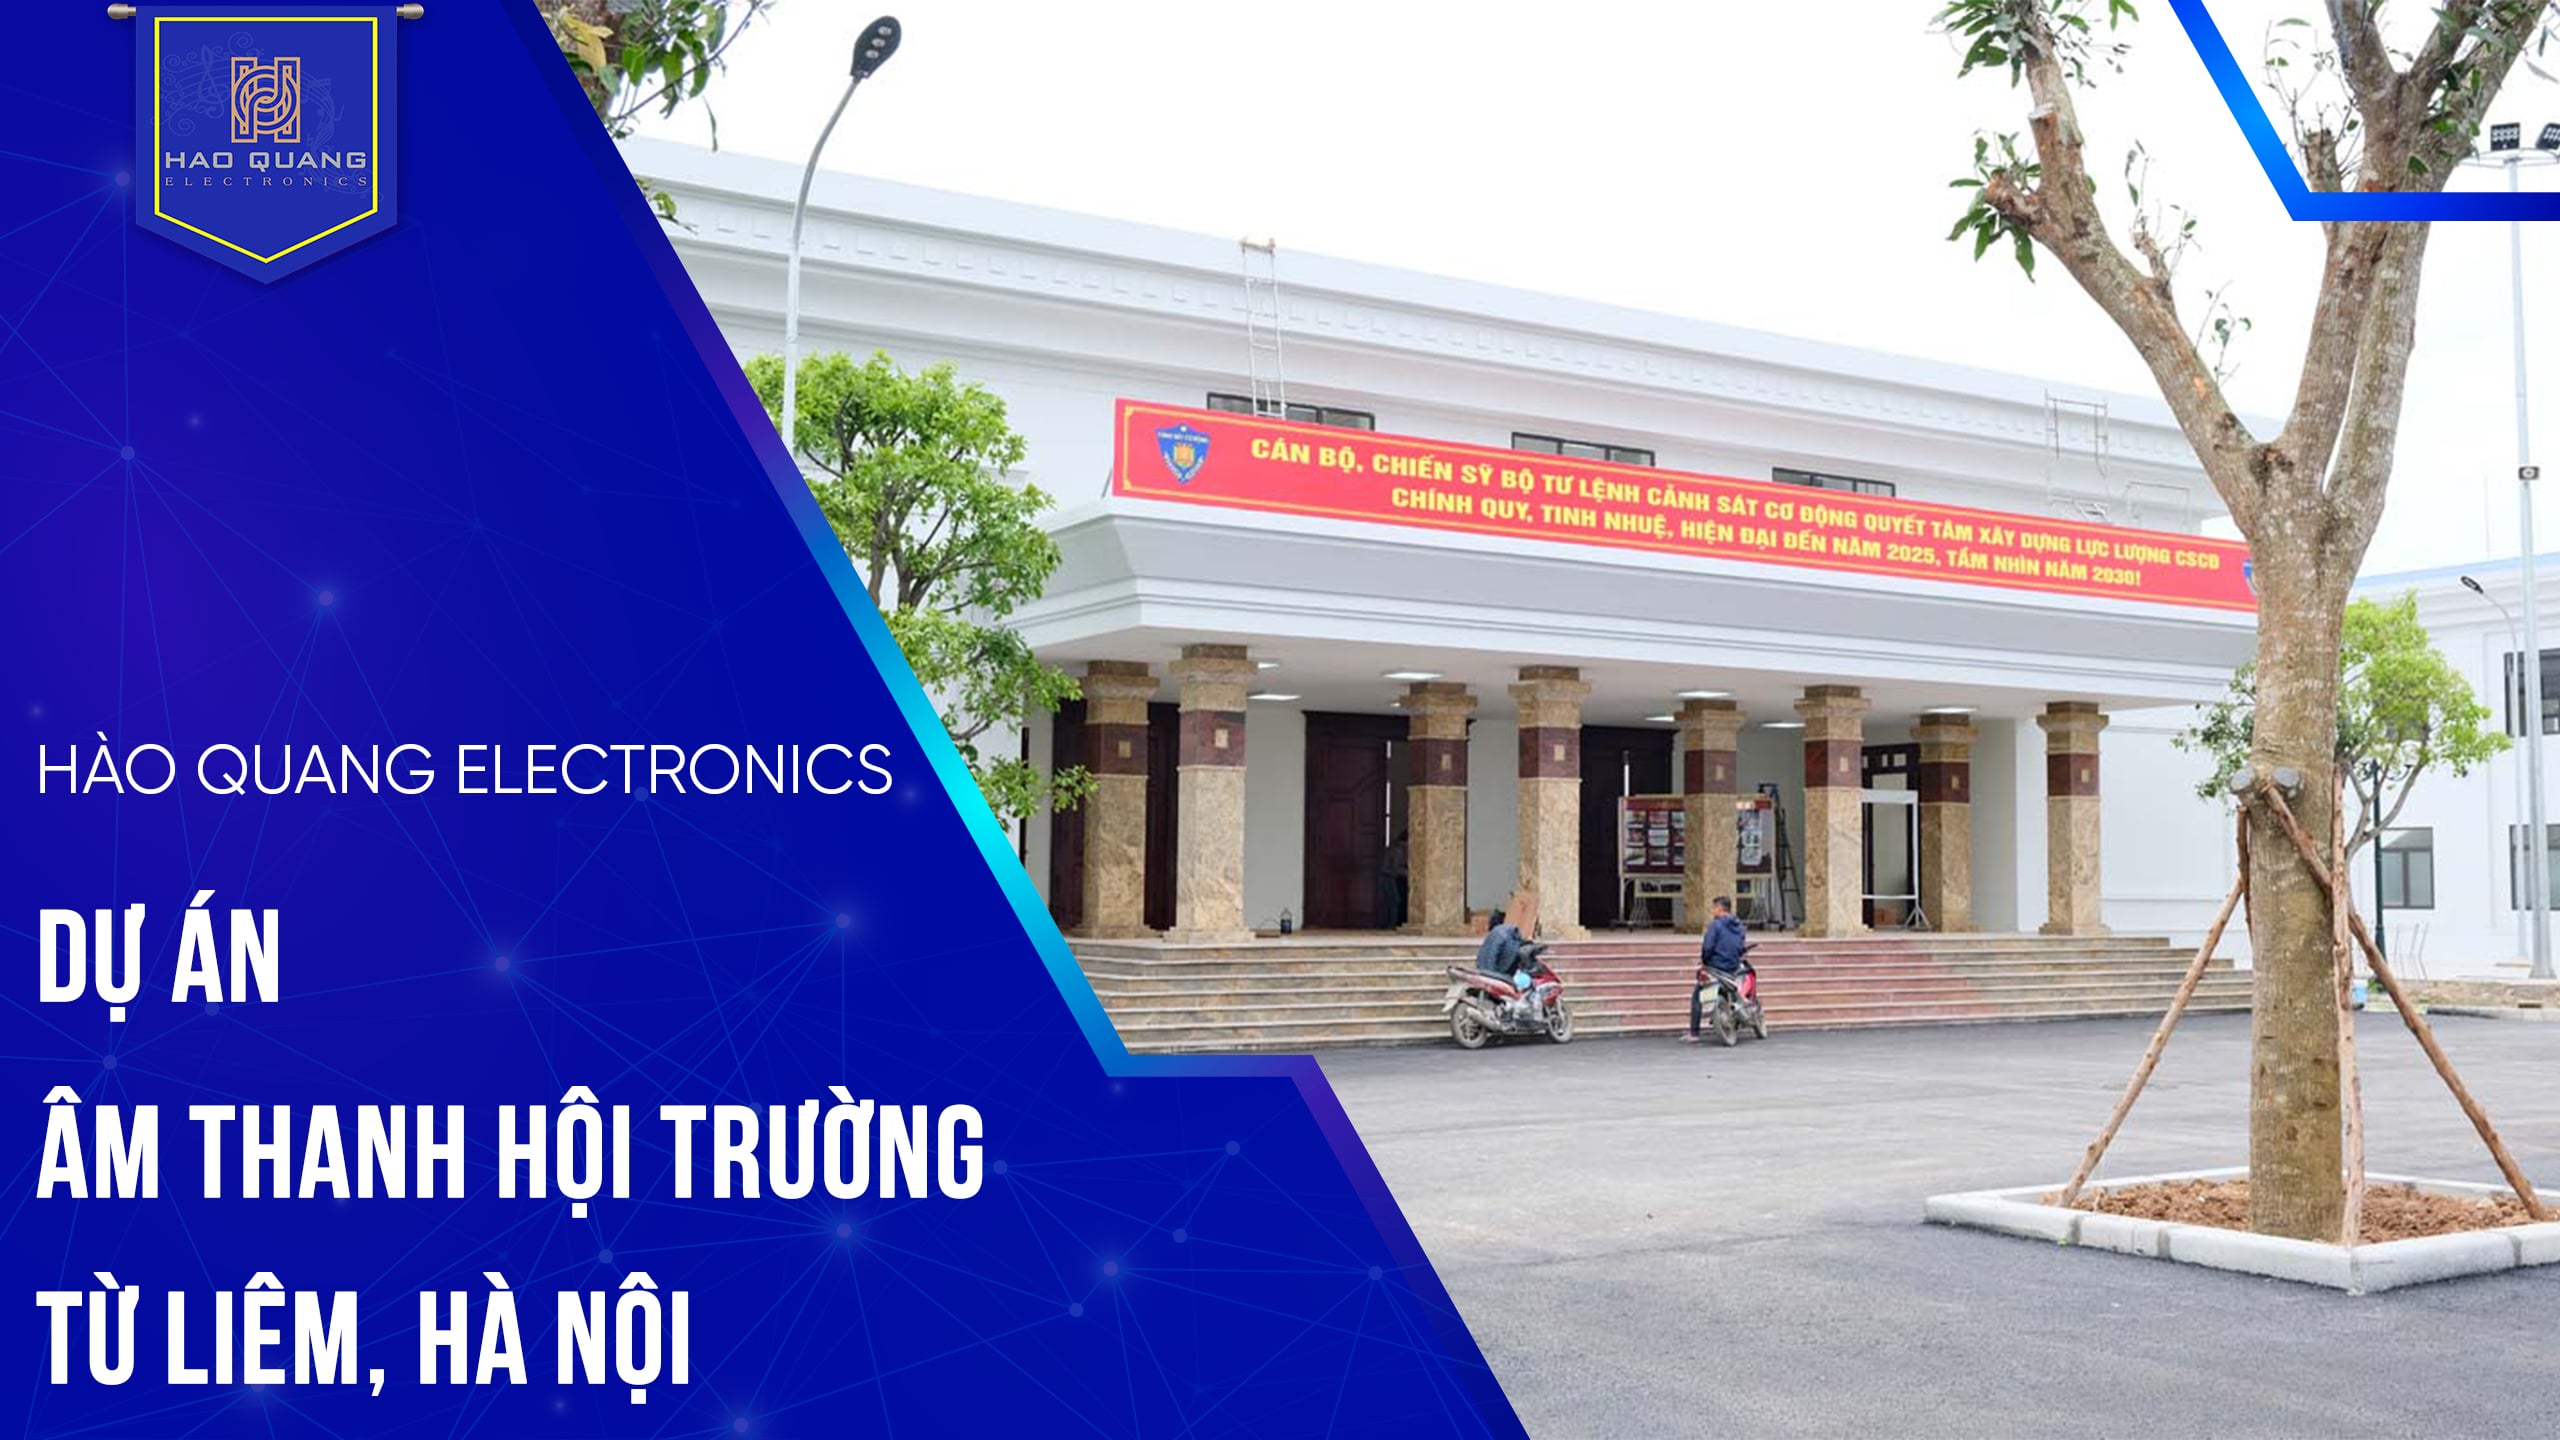 Dự án lắp đặt hệ thống âm thanh hội trường Từ Liêm, Hà Nội